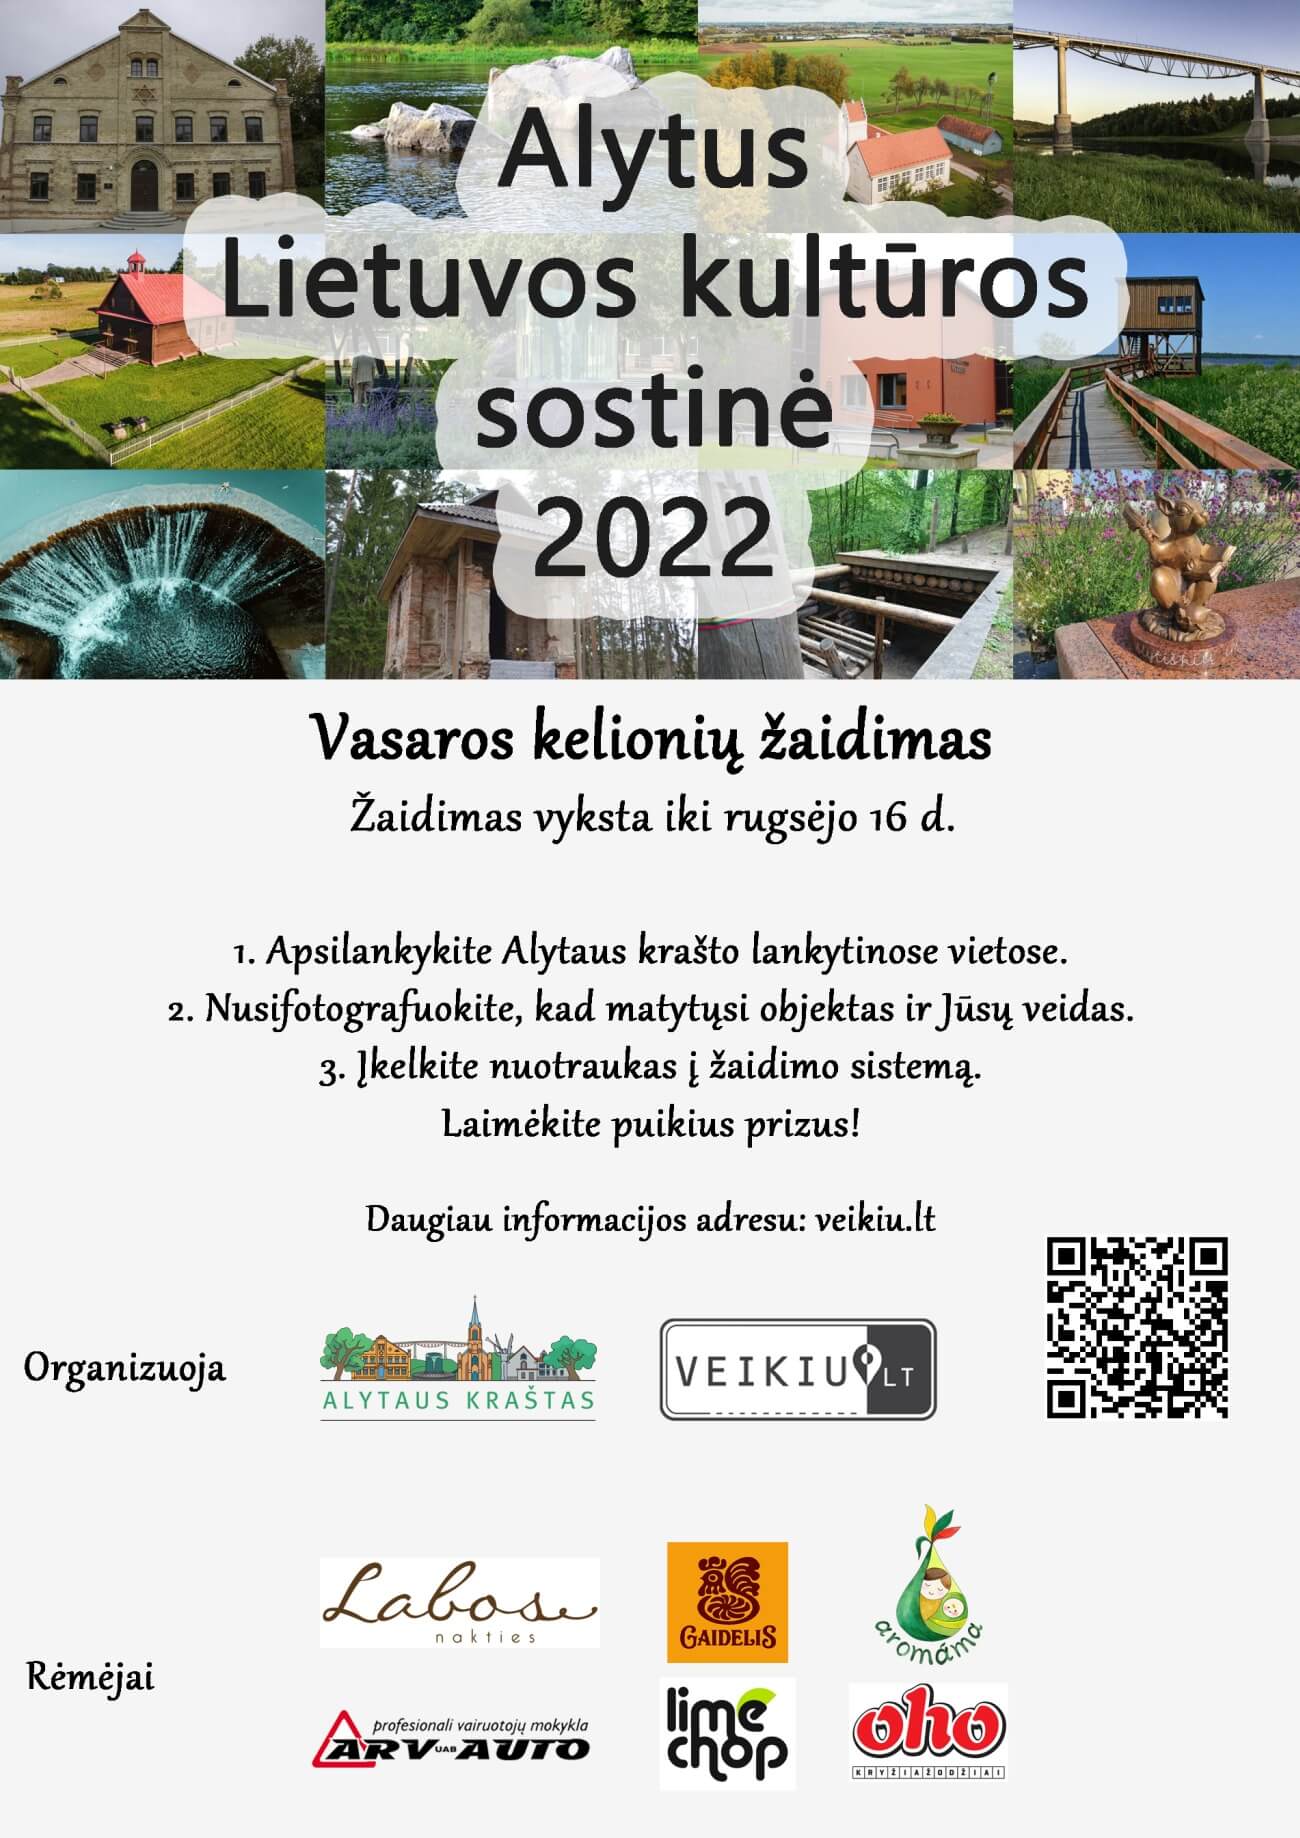 Alytus - Lietuvos kultūros sostinė 2022